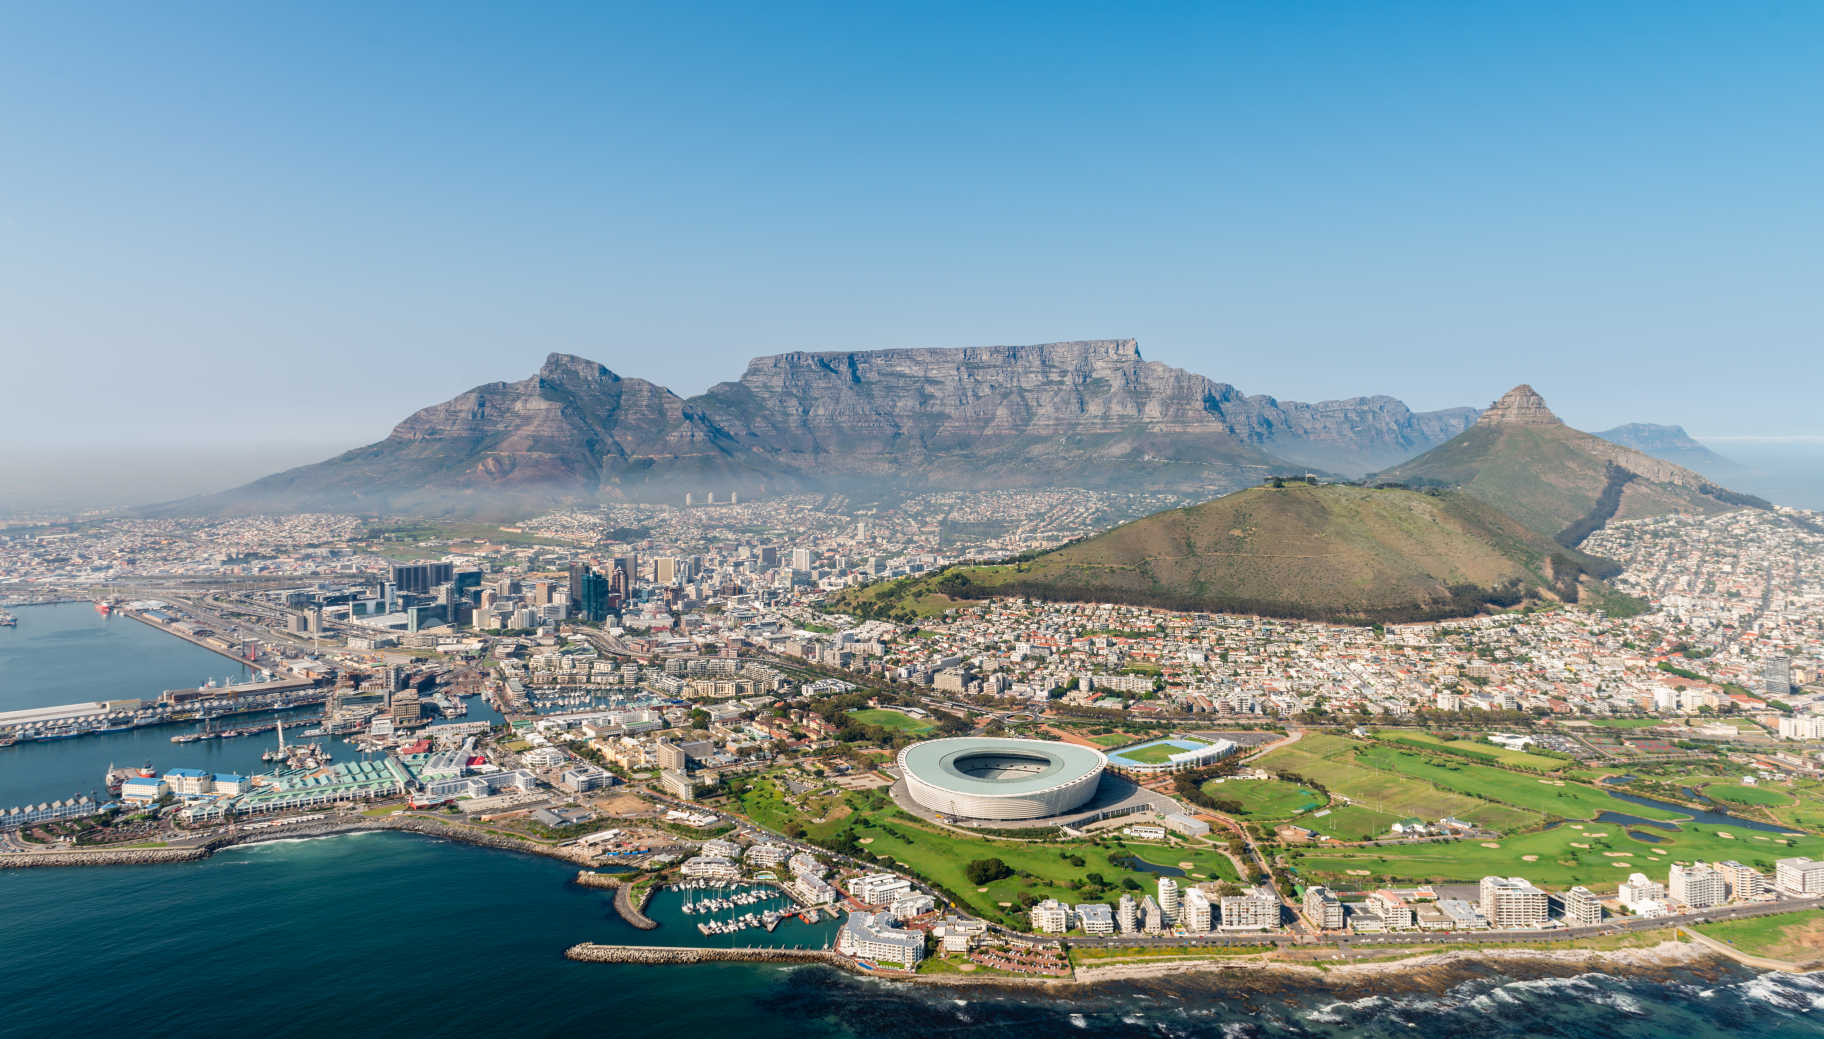 Kaapstad in Zuid-Afrika vanuit de lucht gezien